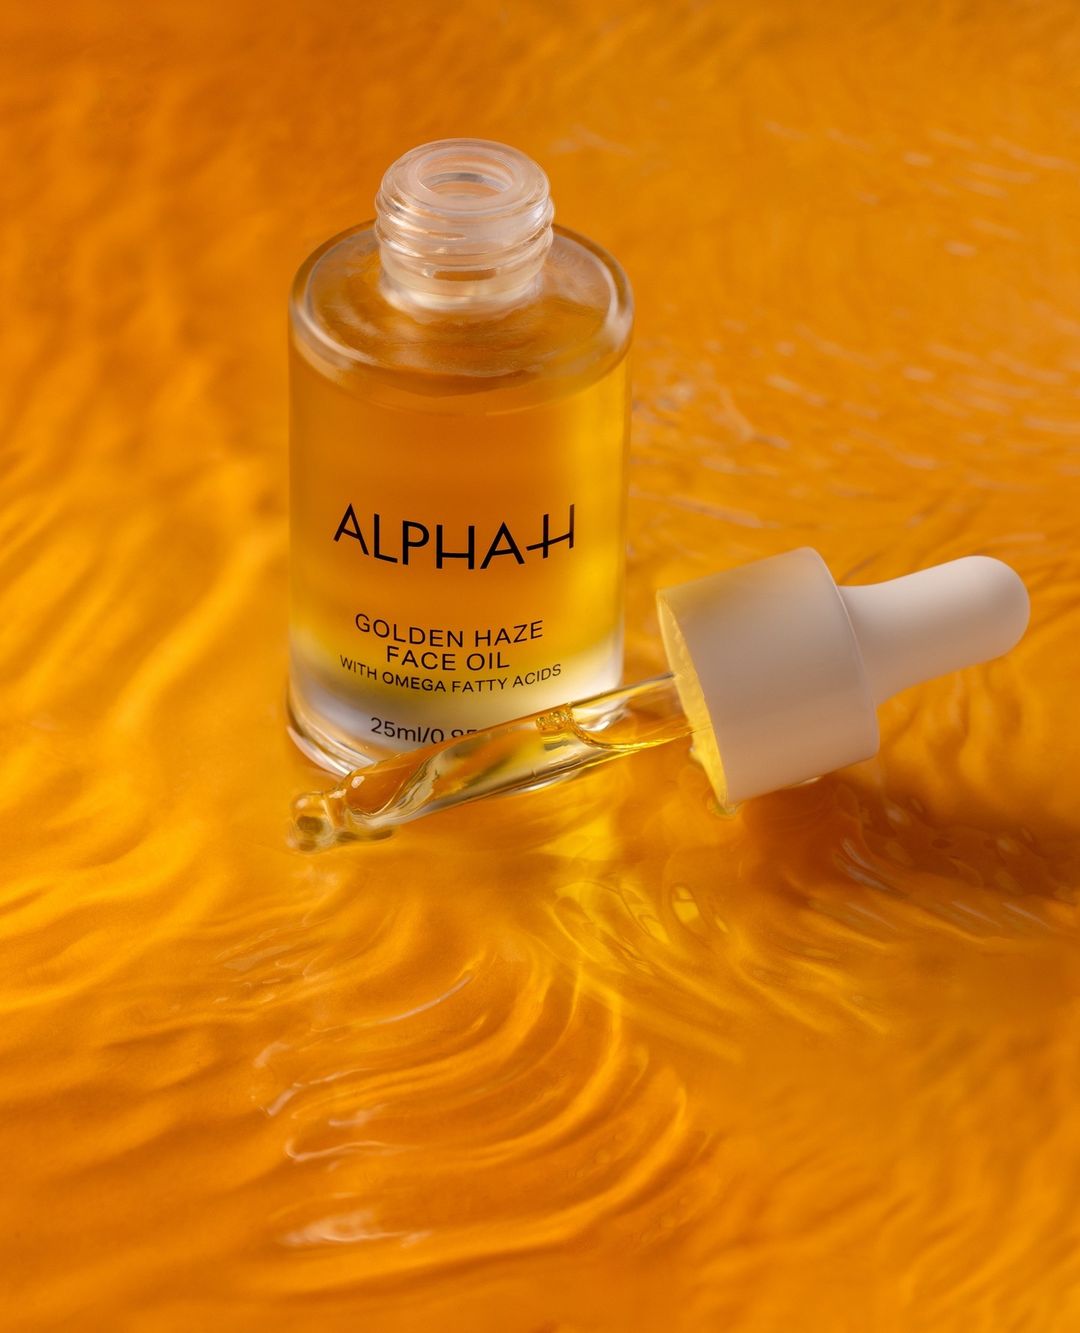 Alpha-H 黃金霧面逆齡面部修護油 Golden Haze Face Oil